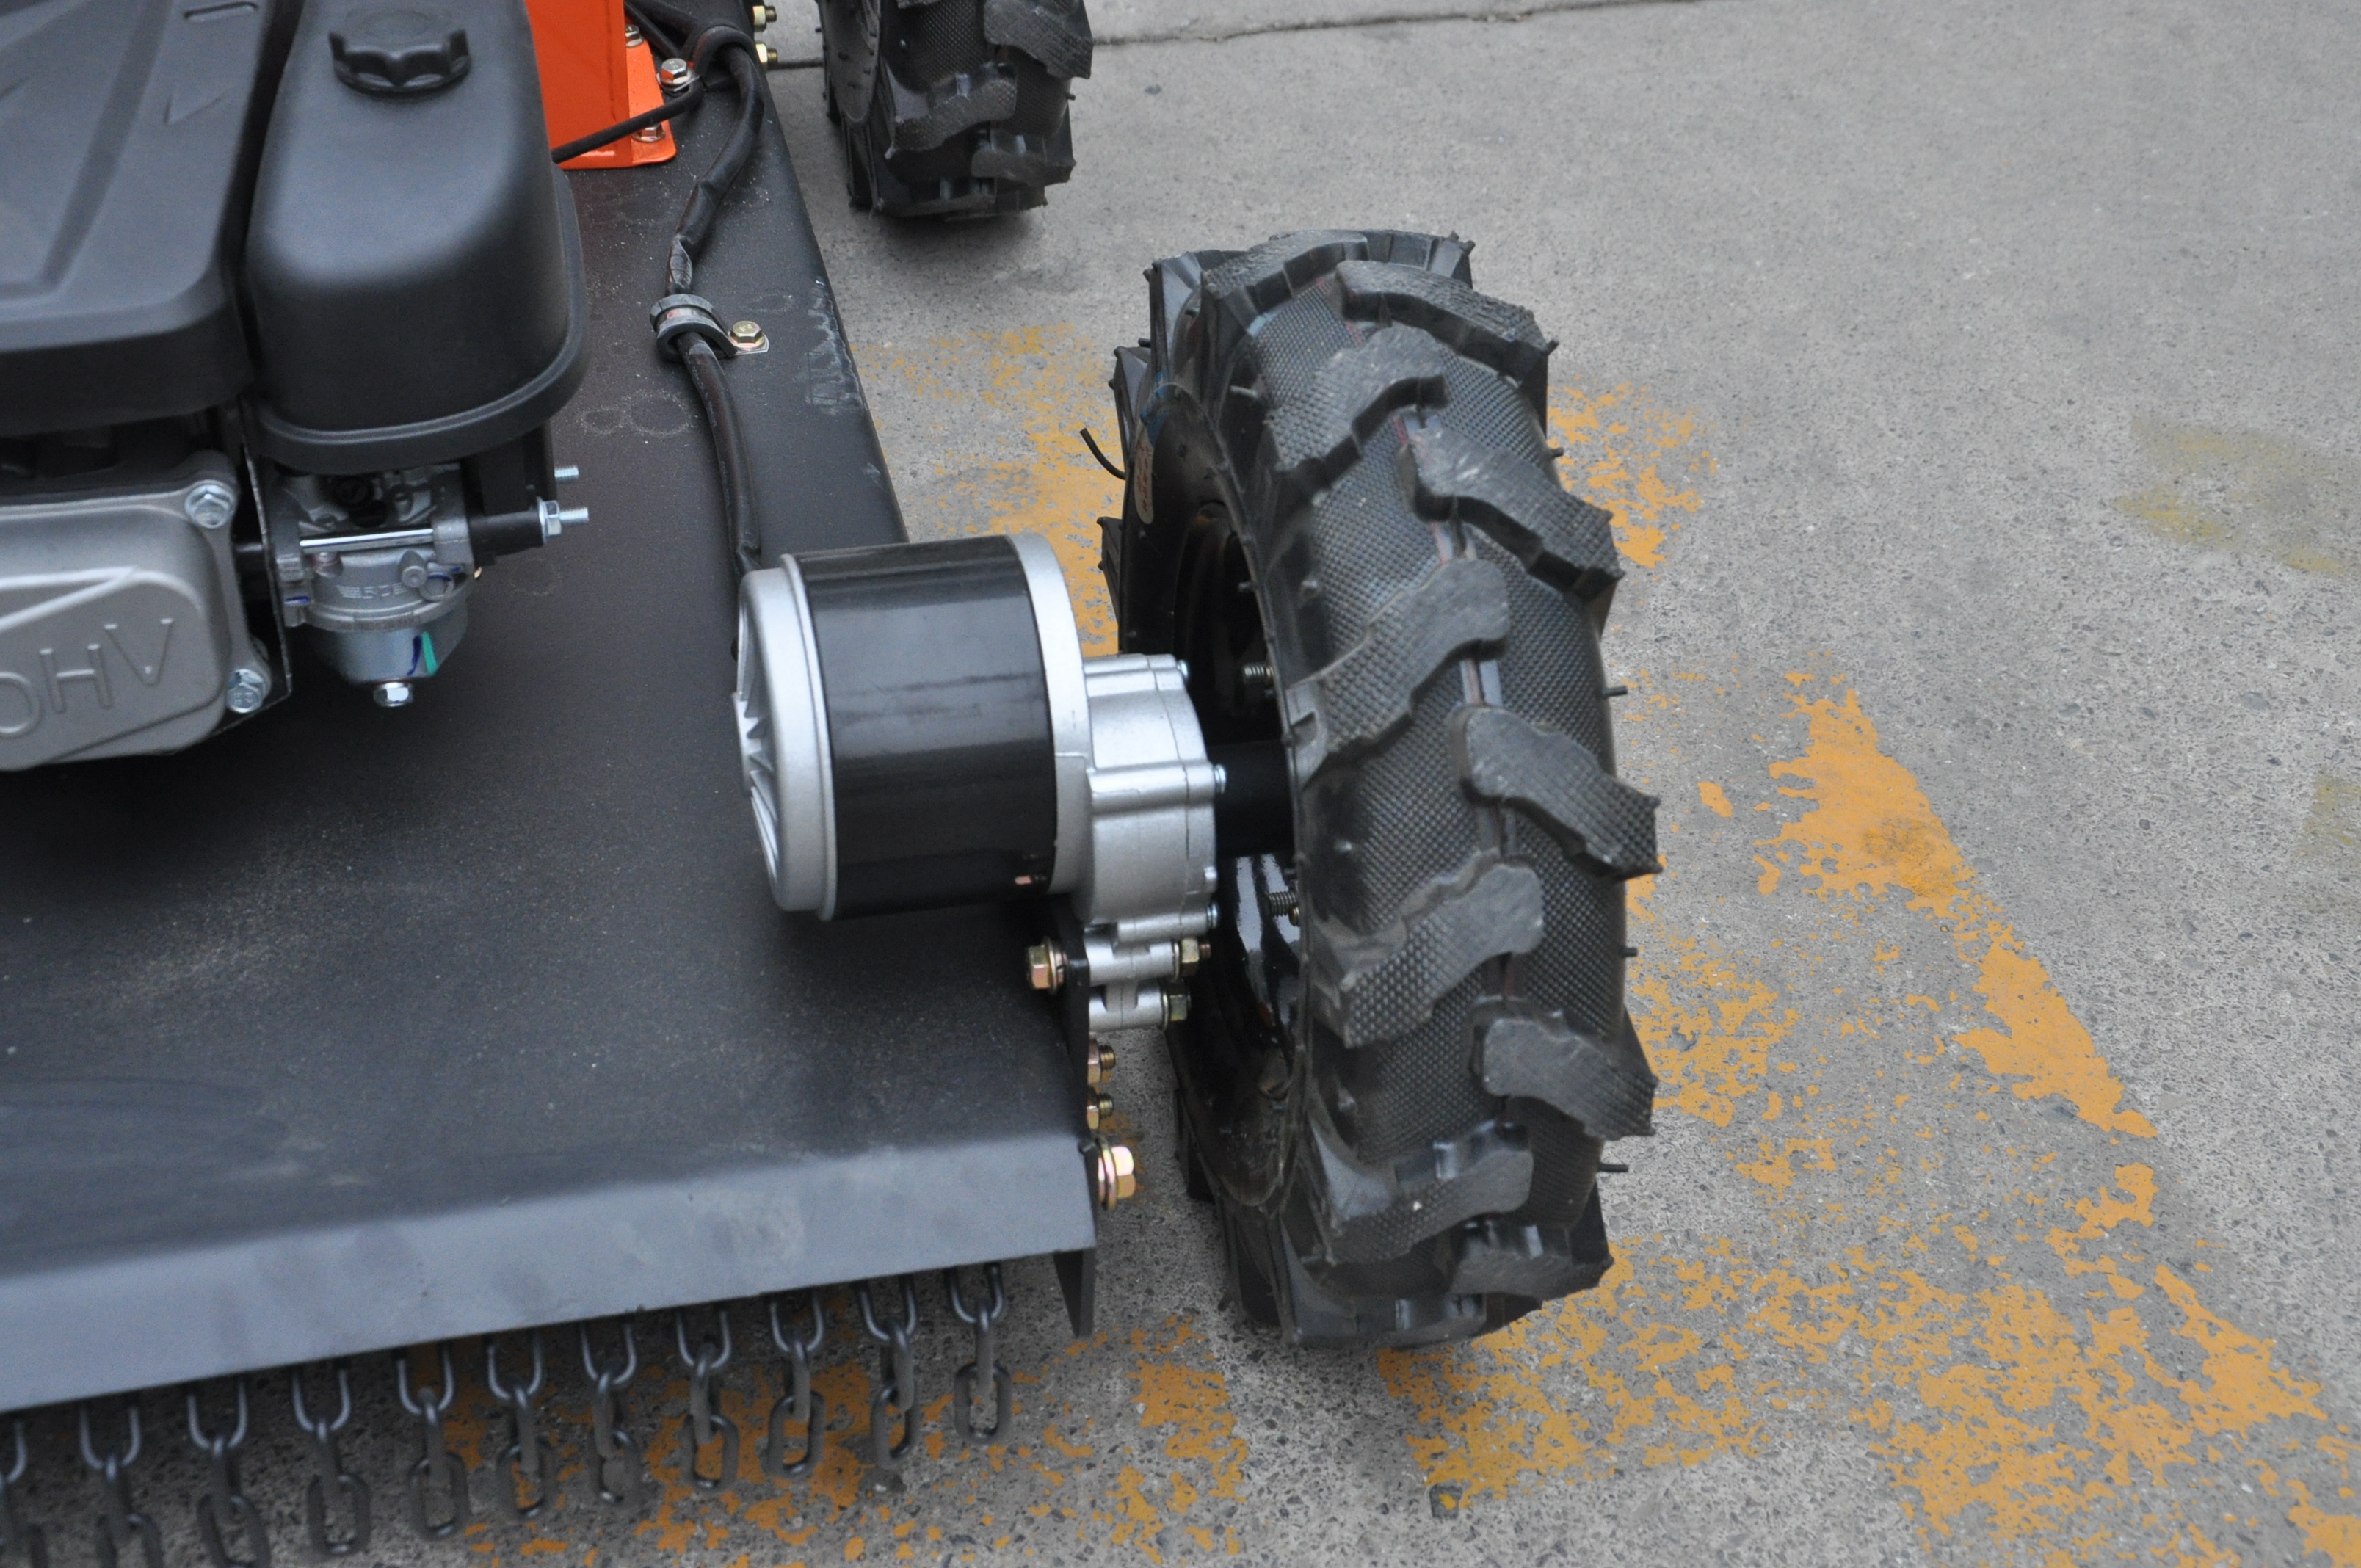 JOYANCE robot mower /zero turn mower lawn mowe robot / grass cutter JT550S